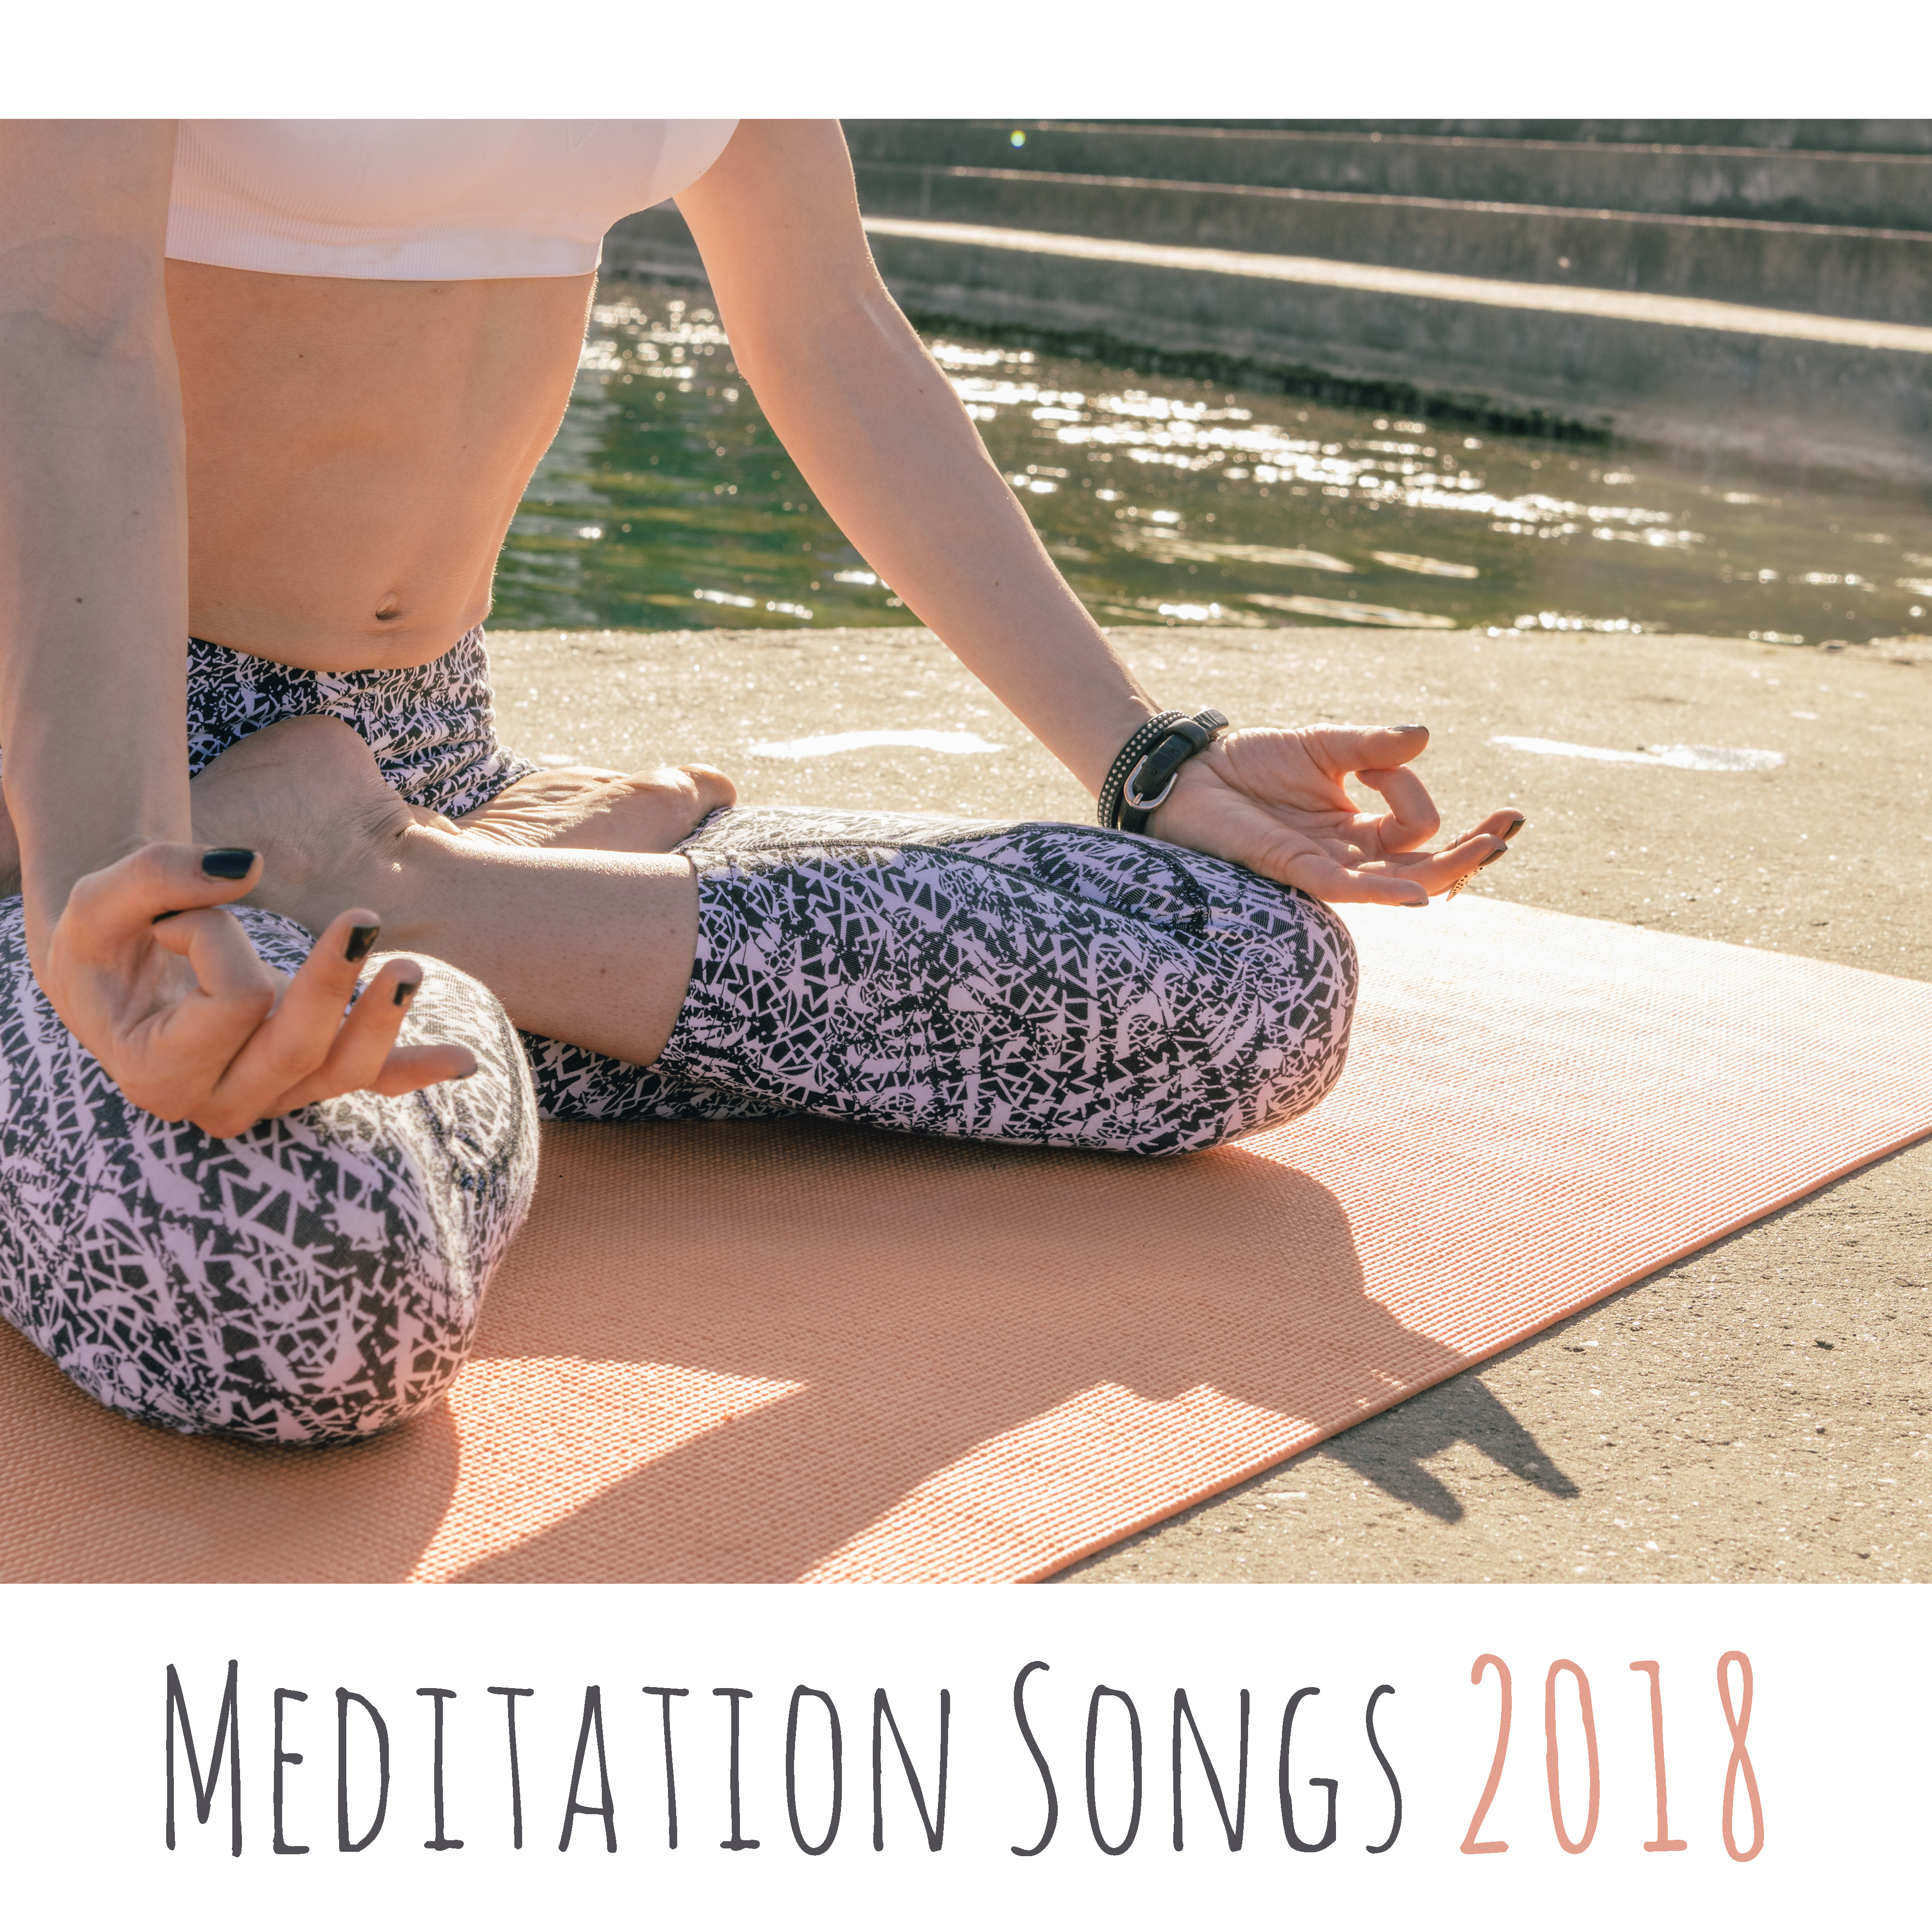 Meditation Songs 2018